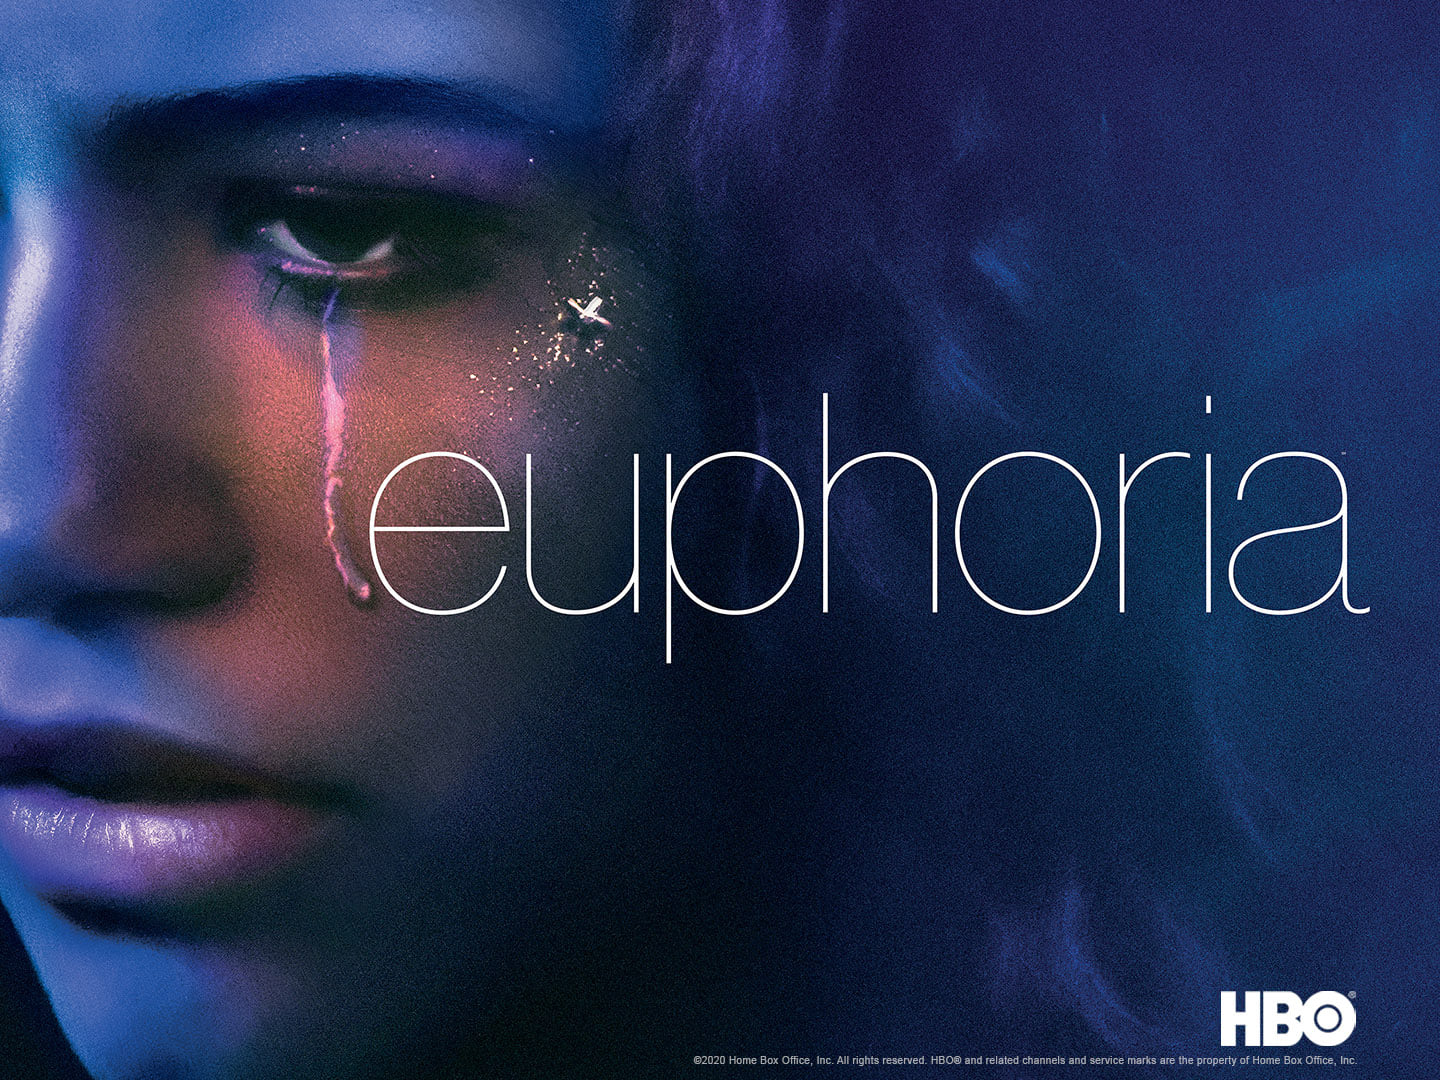 HBO's 'Euphoria' captures the gen z experience through clothes